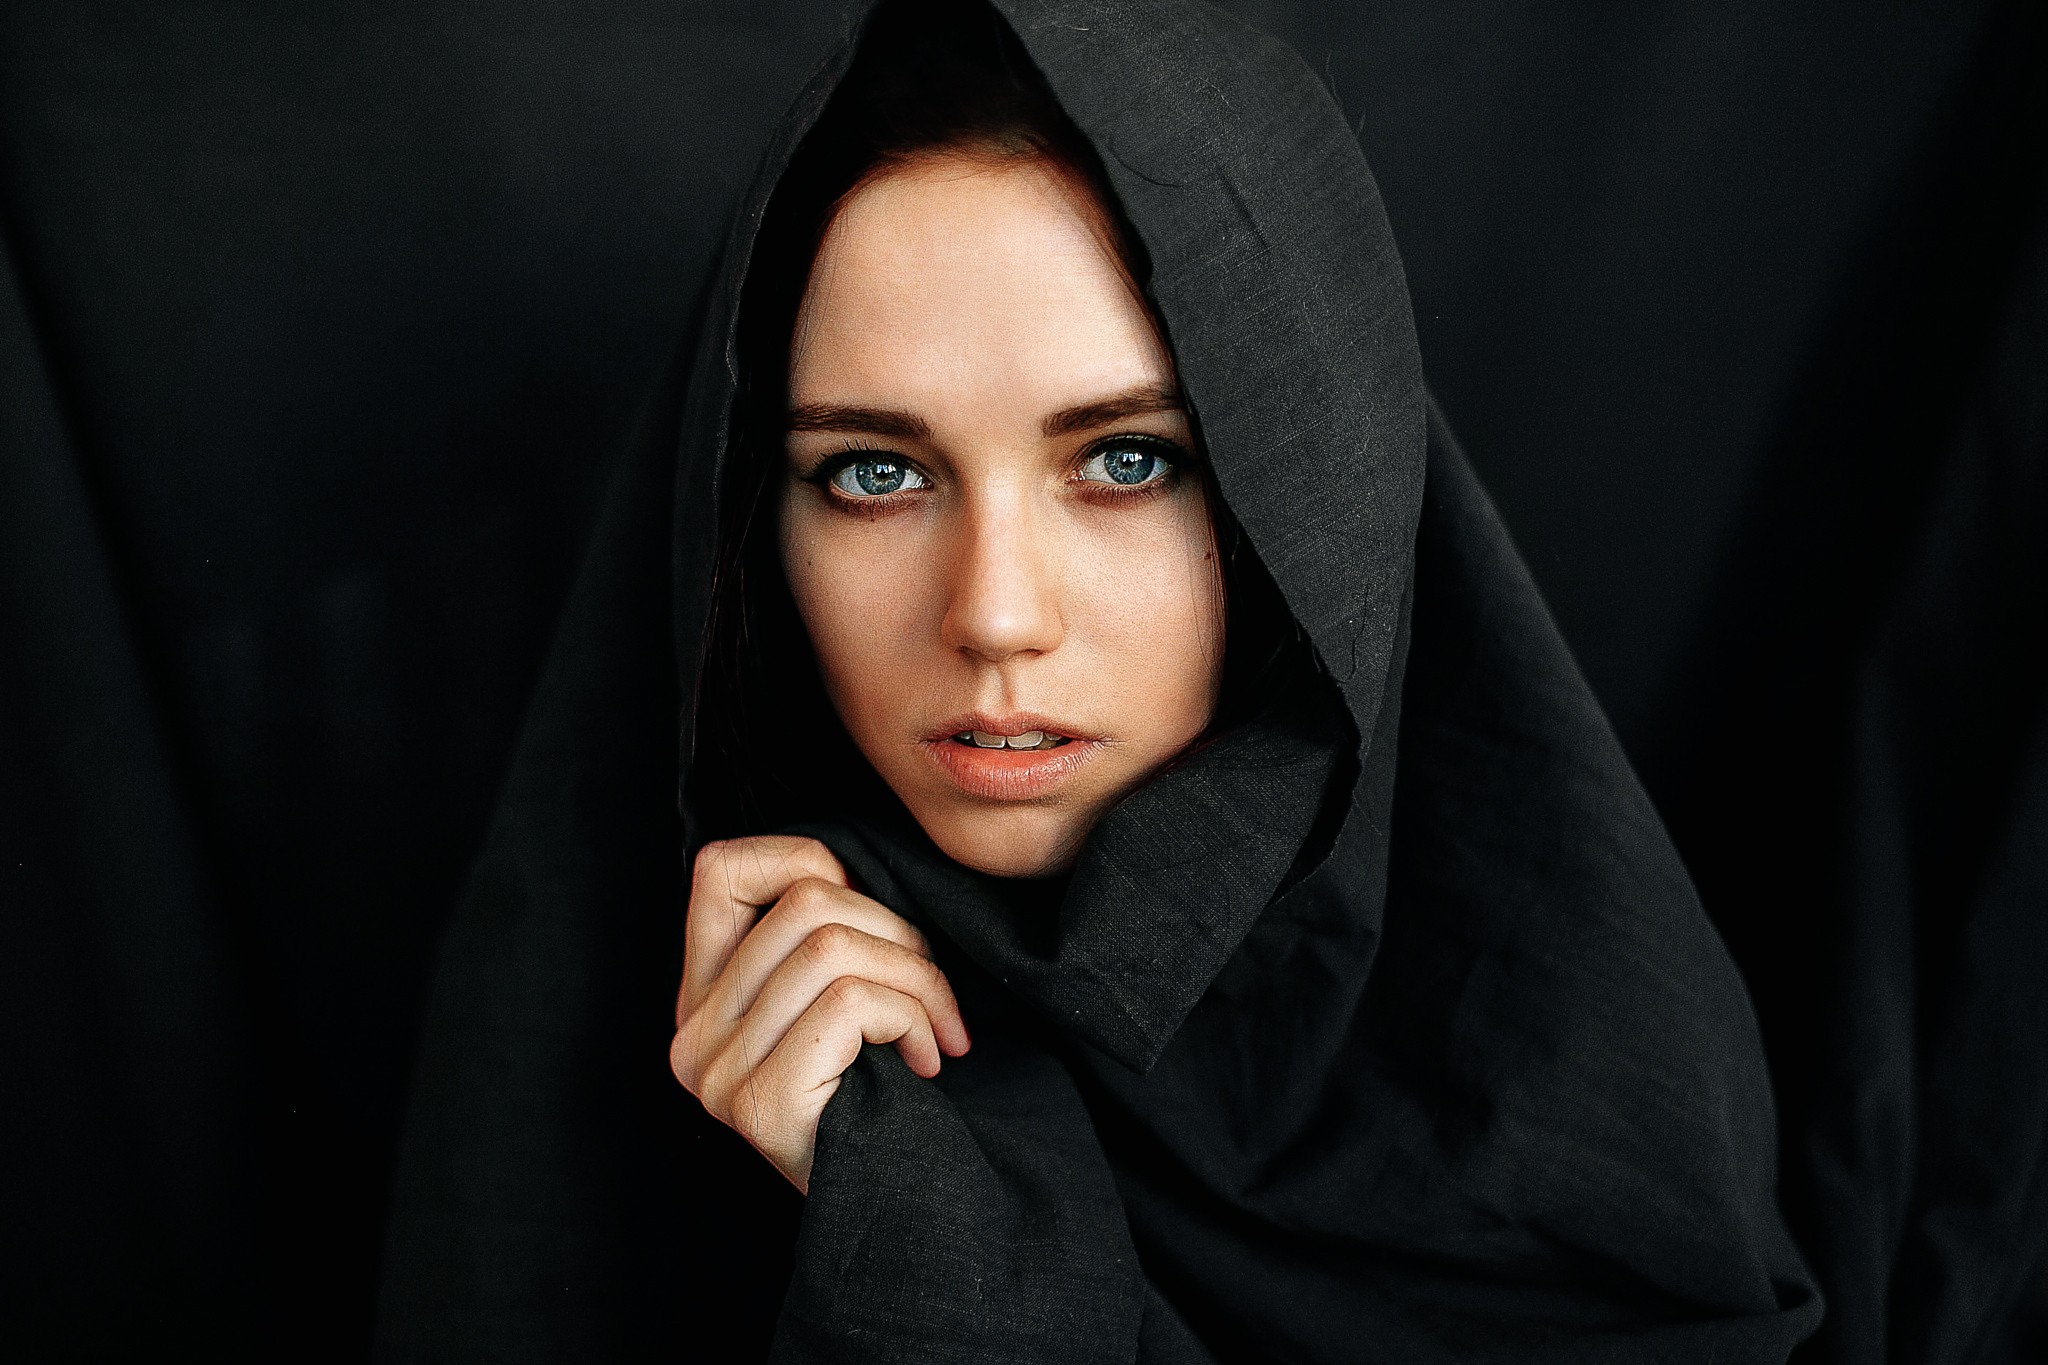 People 2048x1365 portrait face women black looking at viewer model hoods women indoors indoors studio hijabs